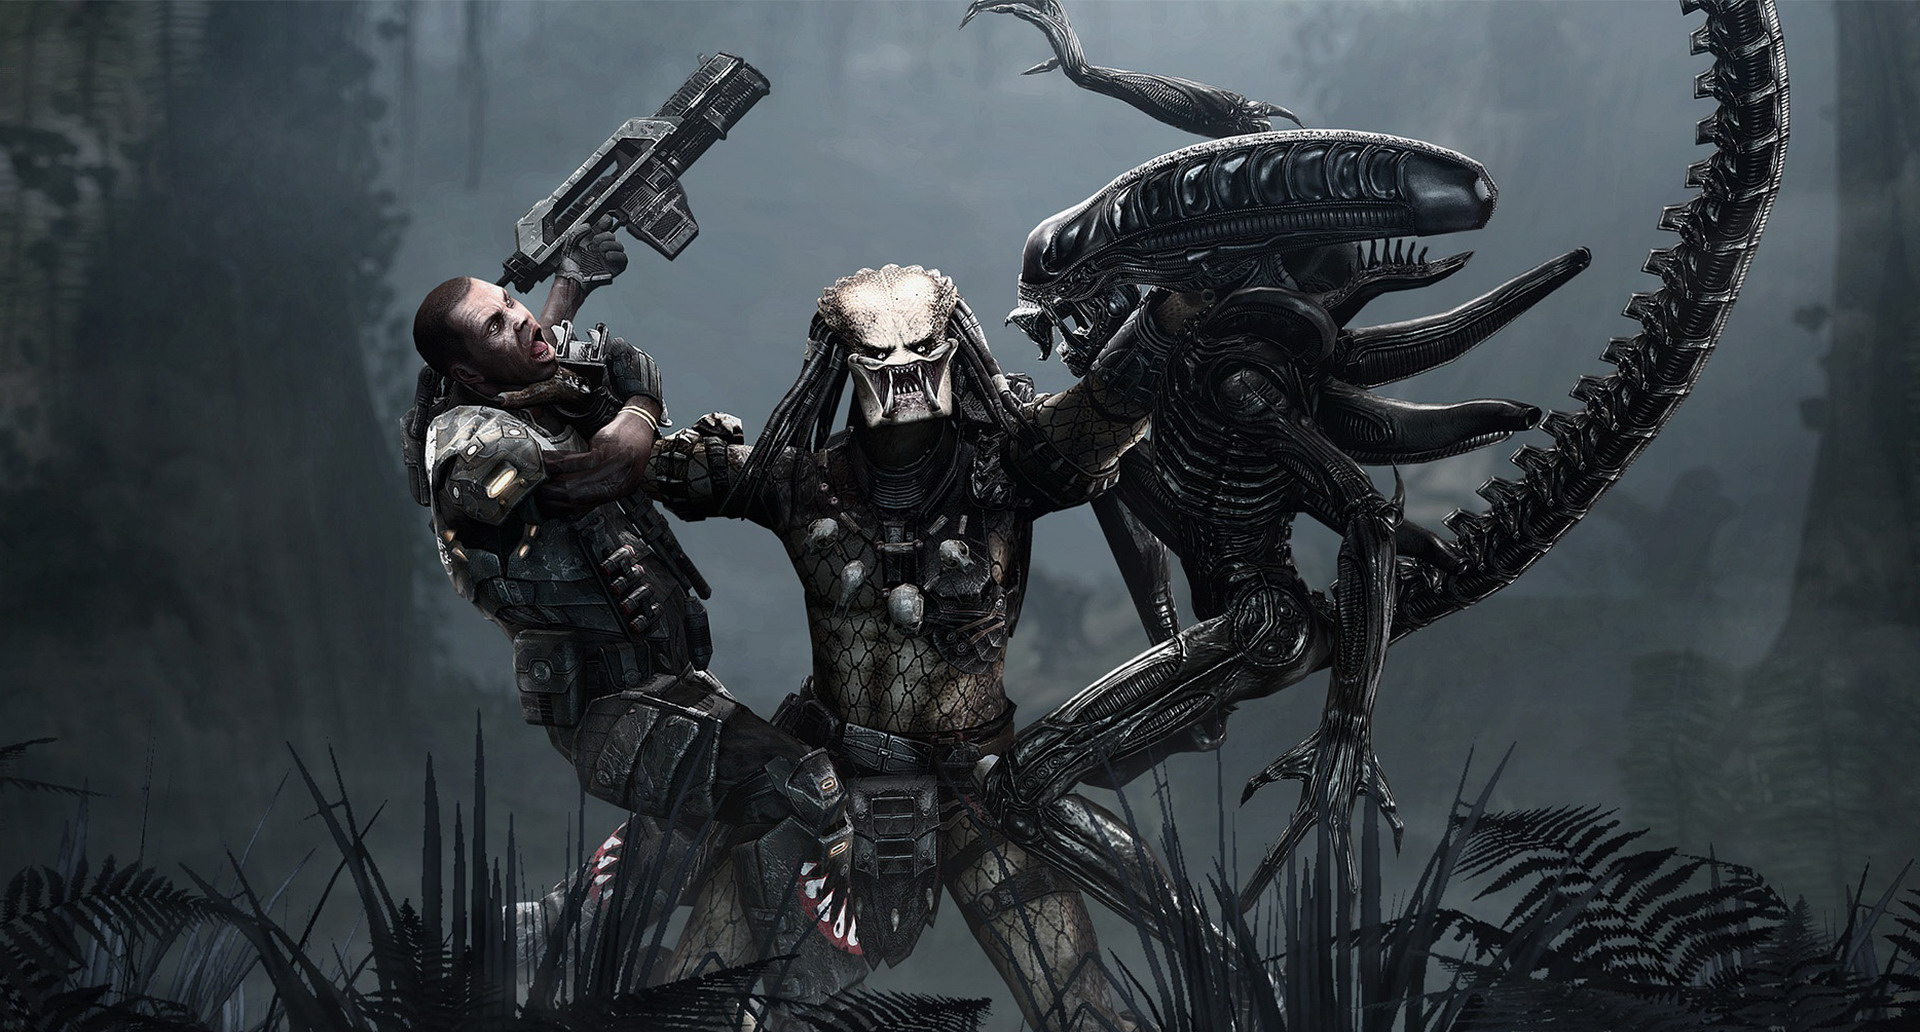 Predalien Vs Predator Fight Scene - Aliens Vs Predator Game 